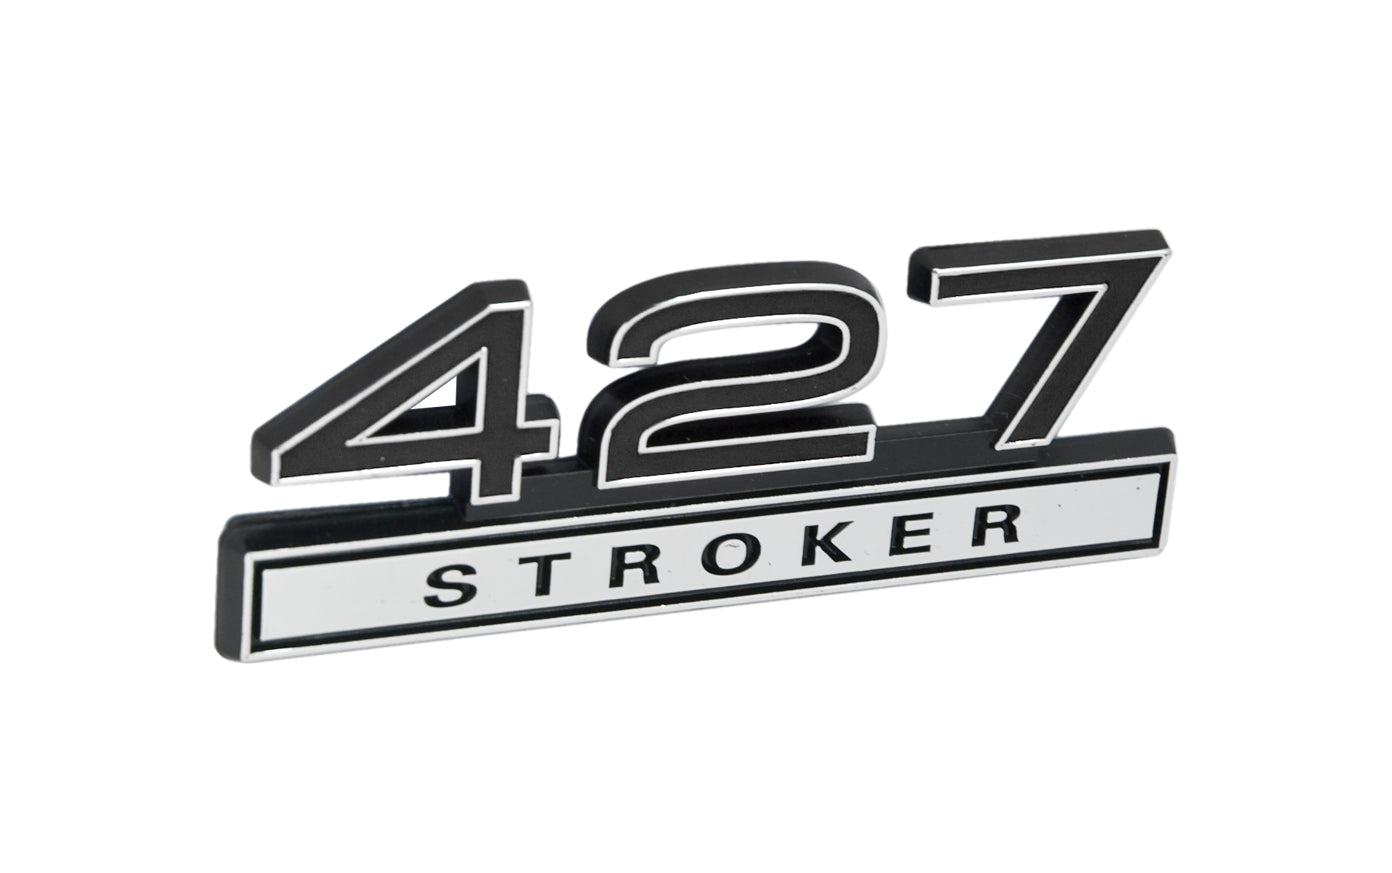 Ford Mustang Black & Chrome 427 427ci Stroker Fender Emblem Badge 4" x 1.5"